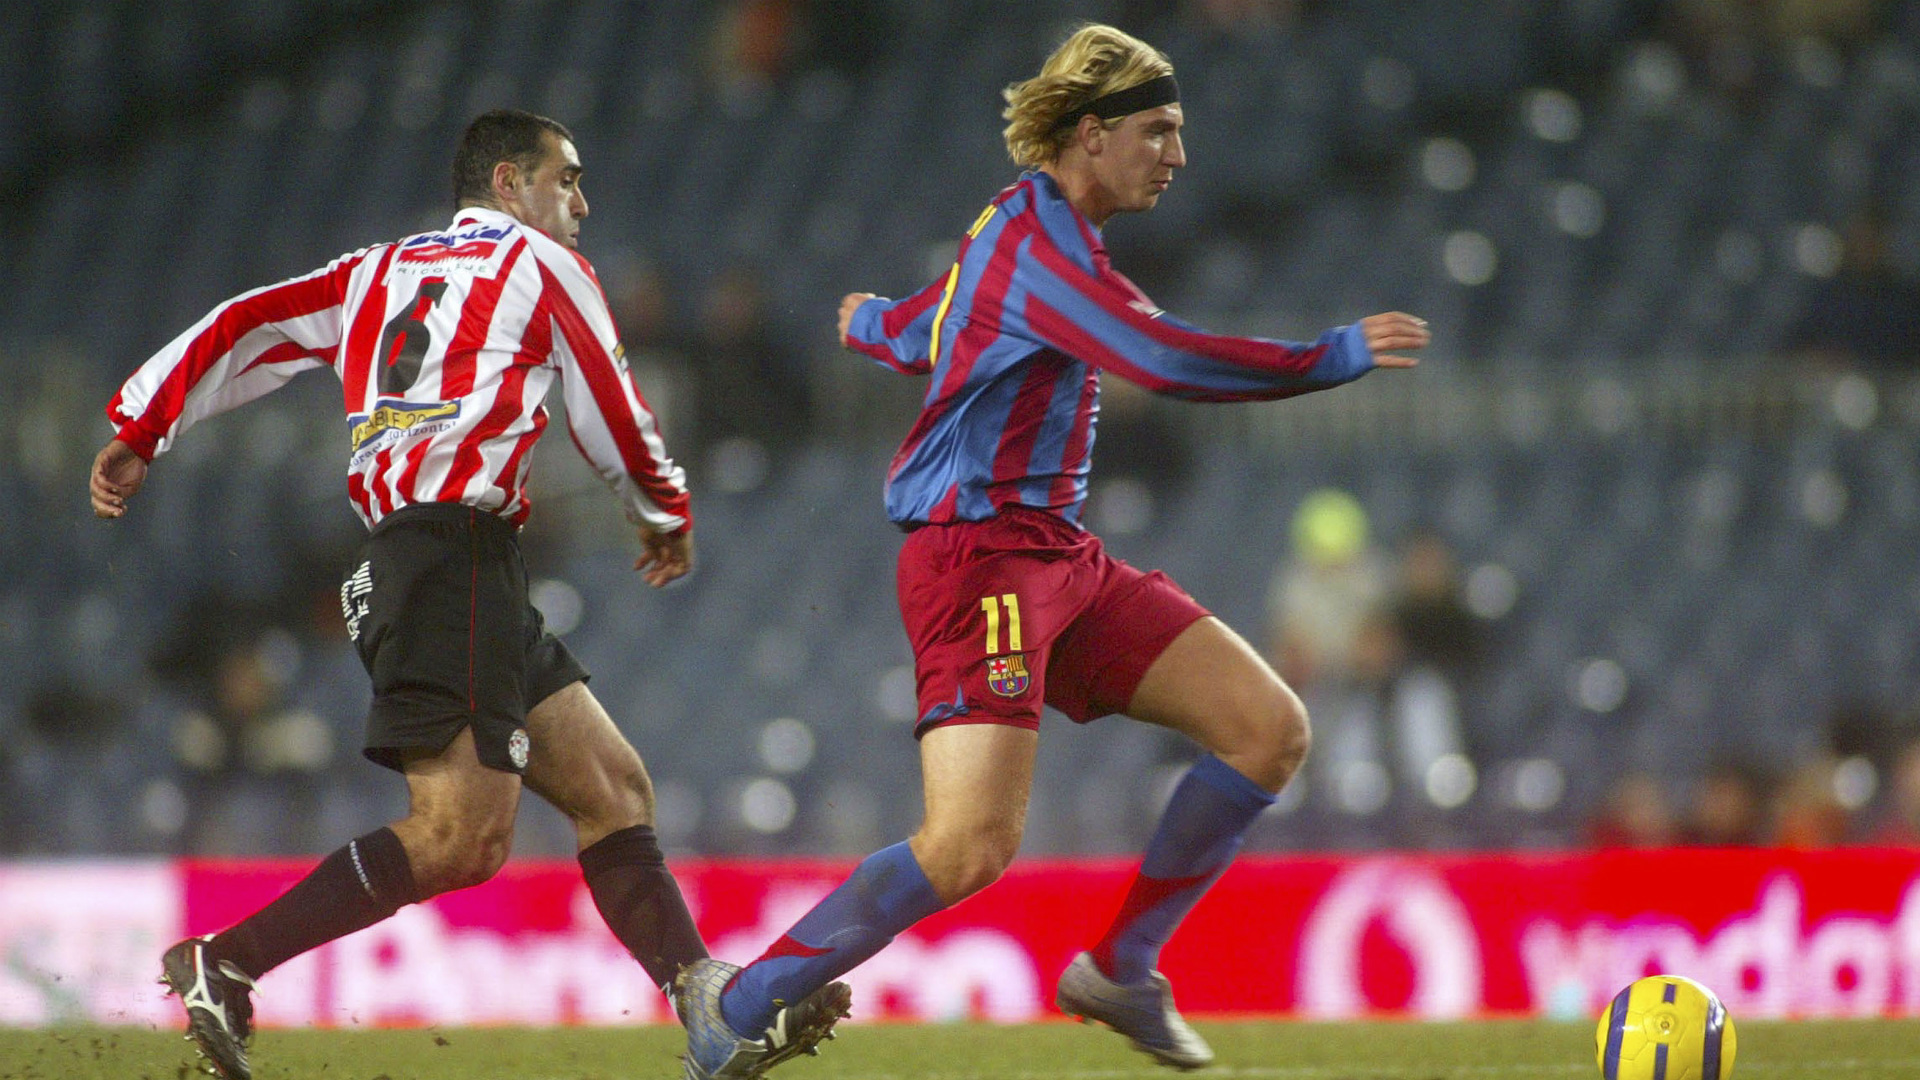 Maxi Lopez ex Barcelona player - Goal.com